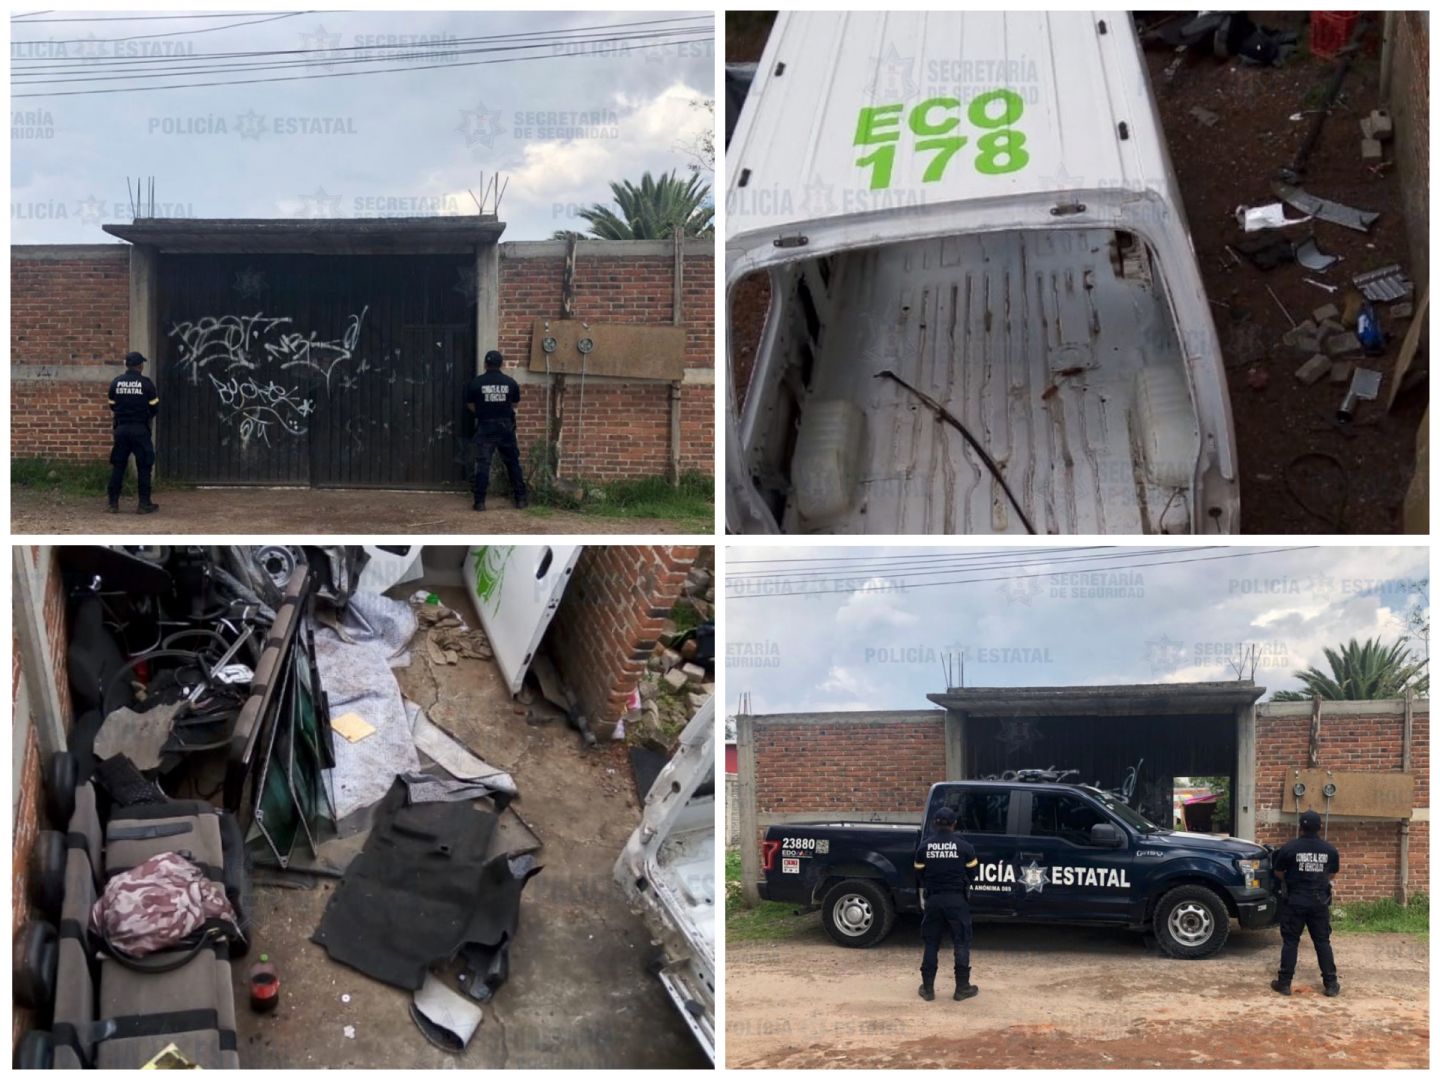 Localizan camioneta con reporte de robo en un predio en Santiago Chimalpa Chiautla